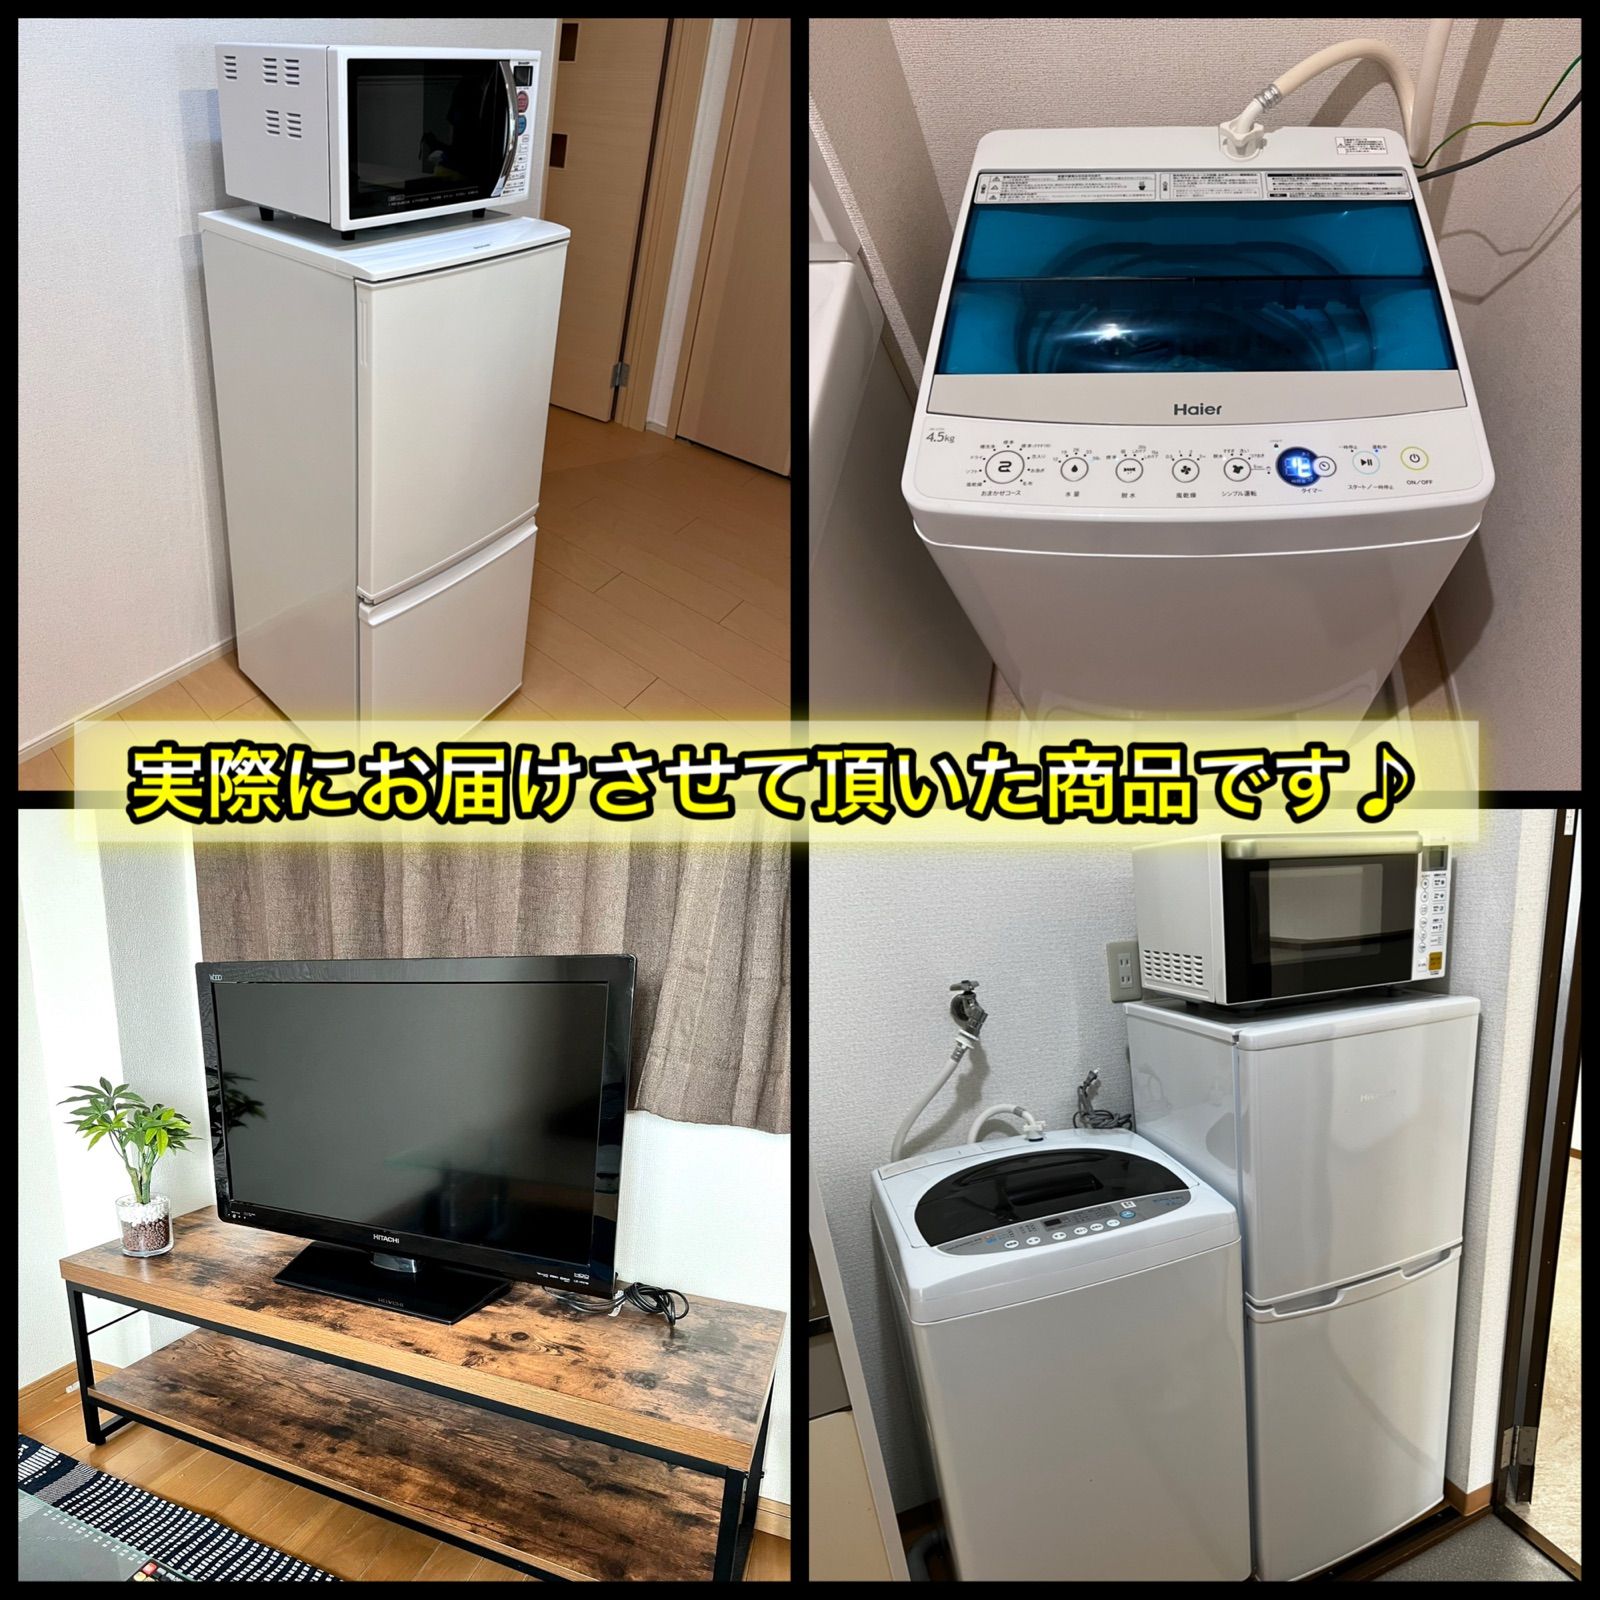 しいひとり 一人暮らし JR-NF148B（ブラック） 5.5kg 全自動洗濯機 JW